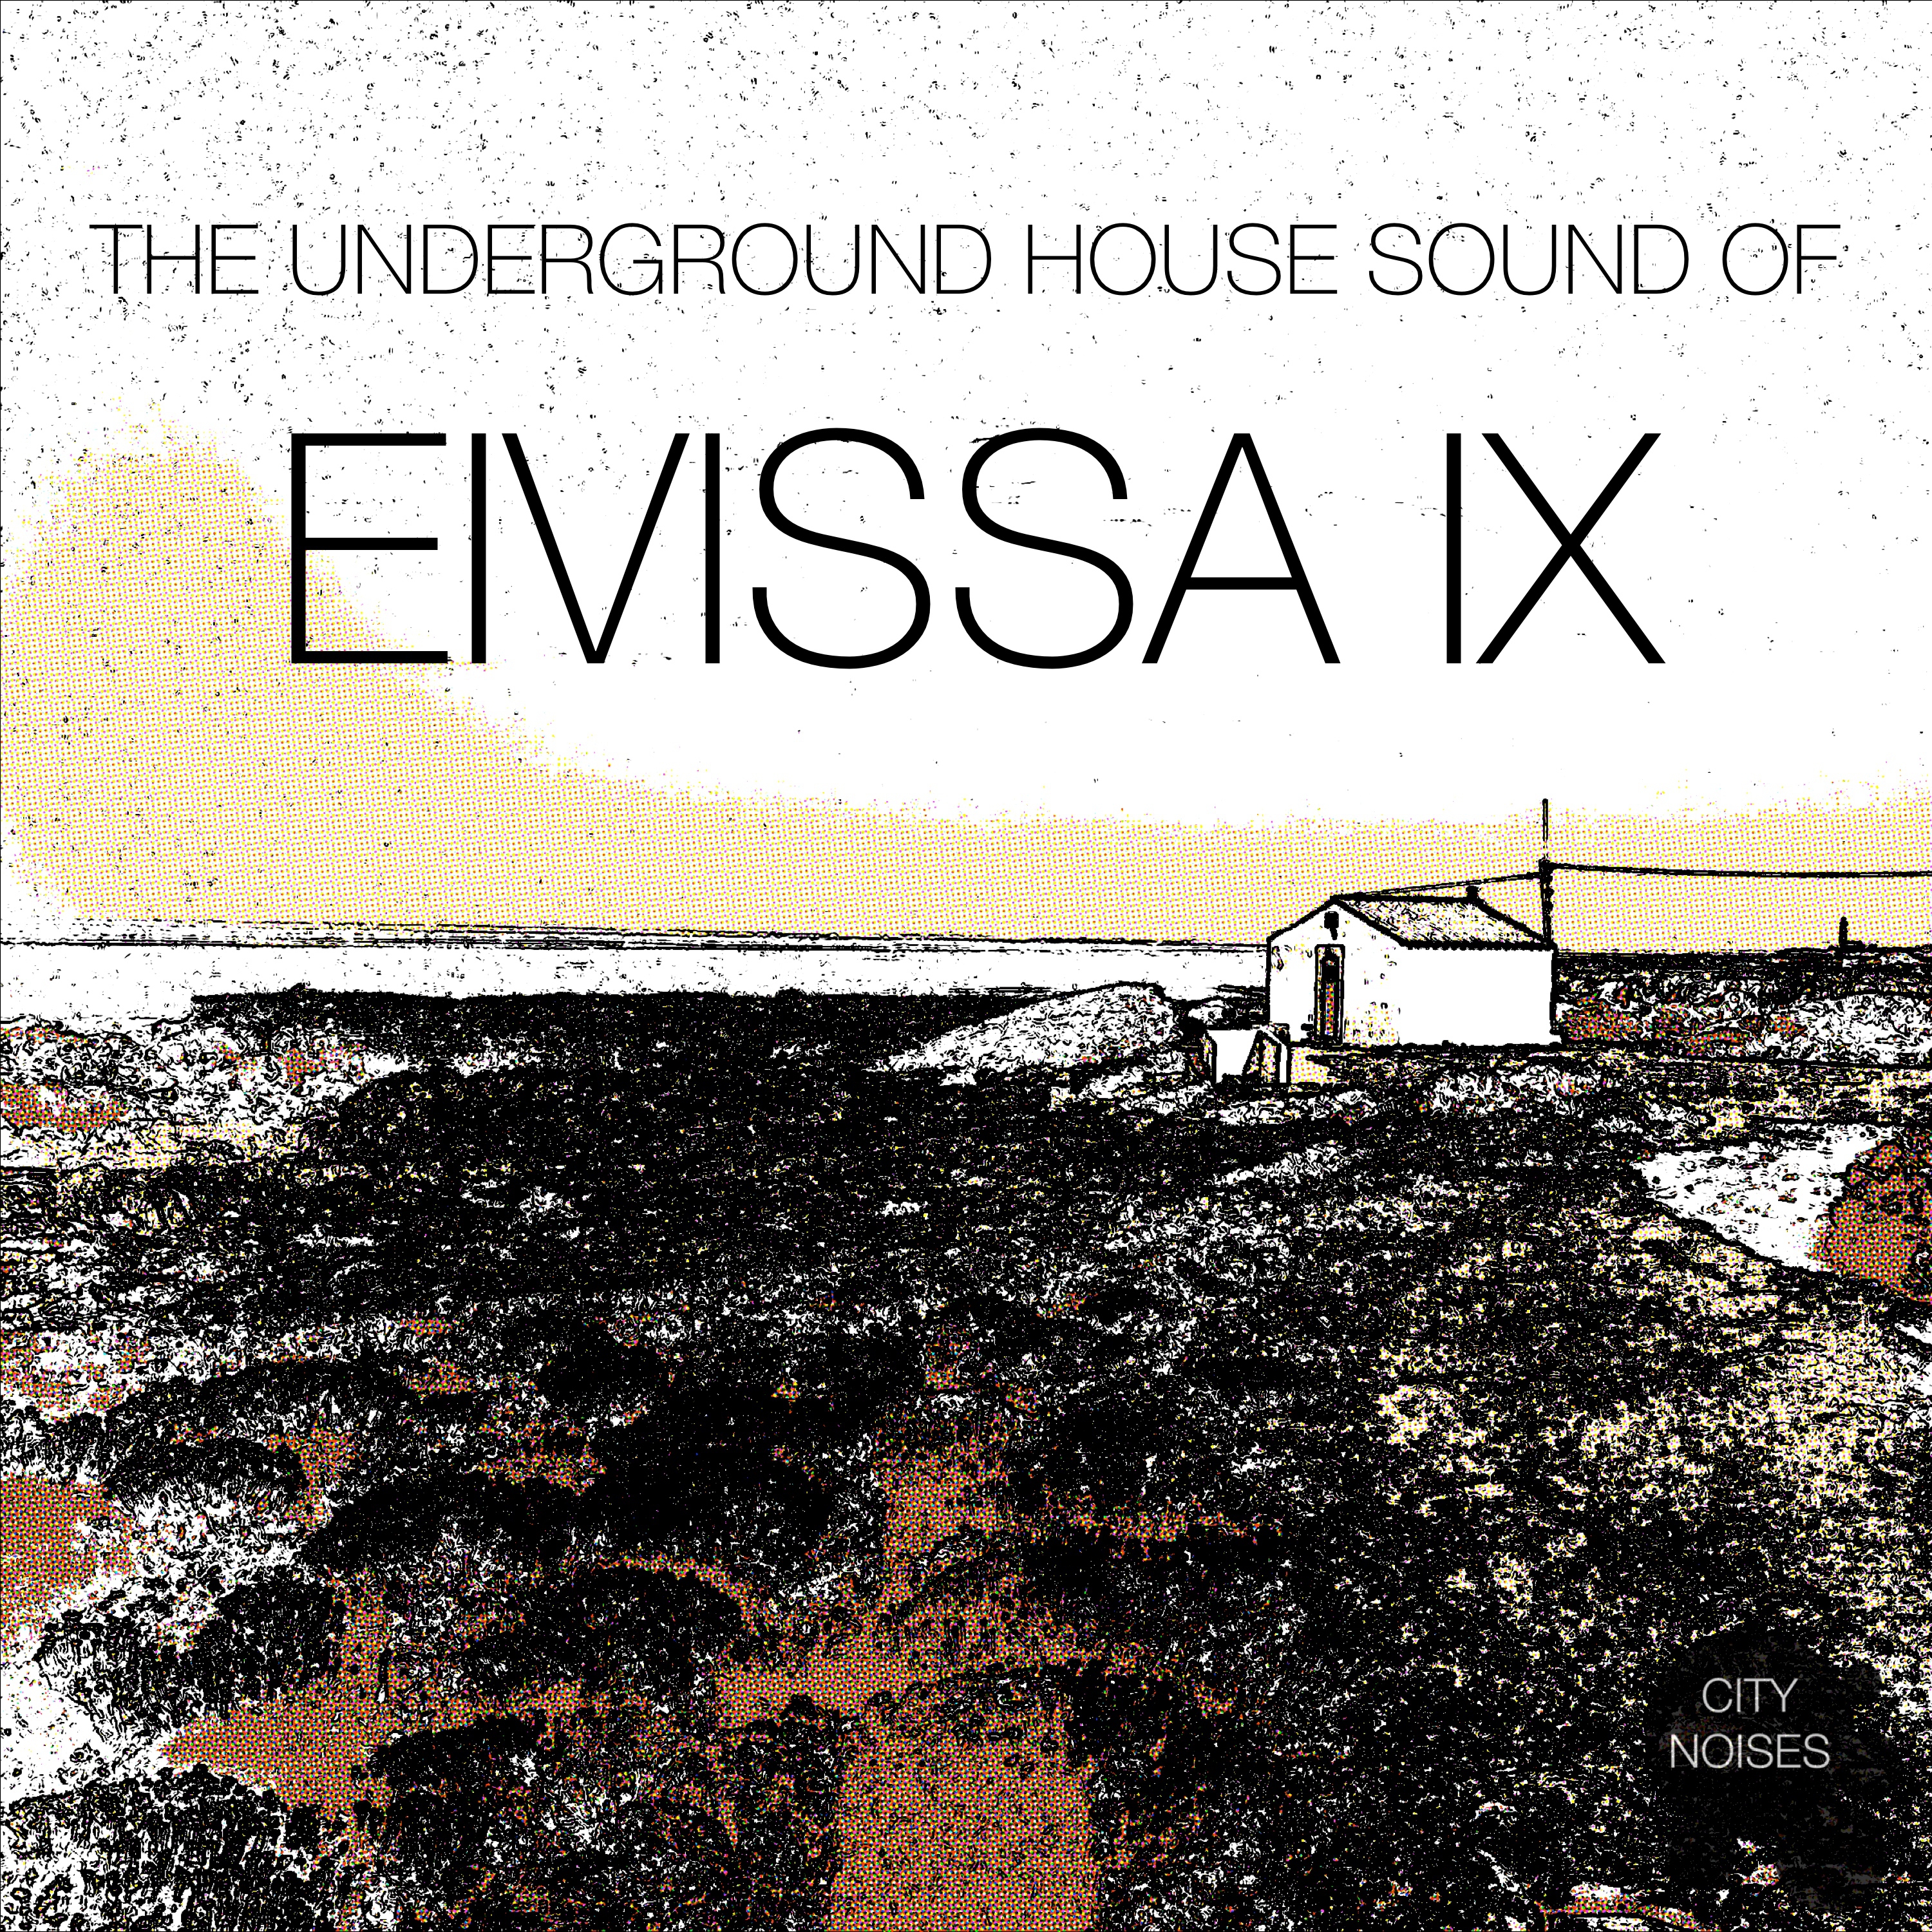 The Underground House Sound of Eivissa, Vol. 9